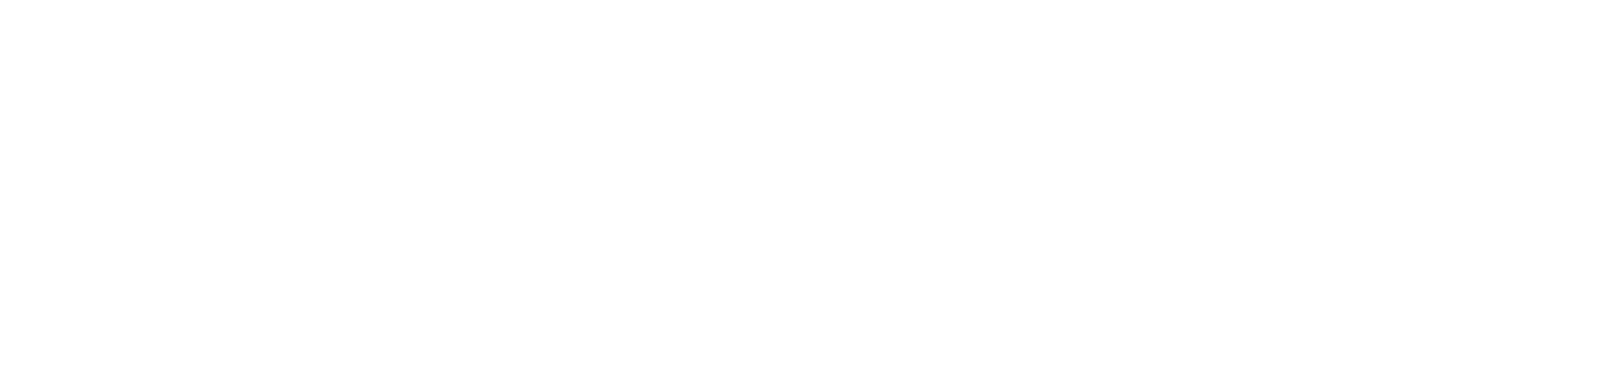 Veritiv
 logo large for dark backgrounds (transparent PNG)